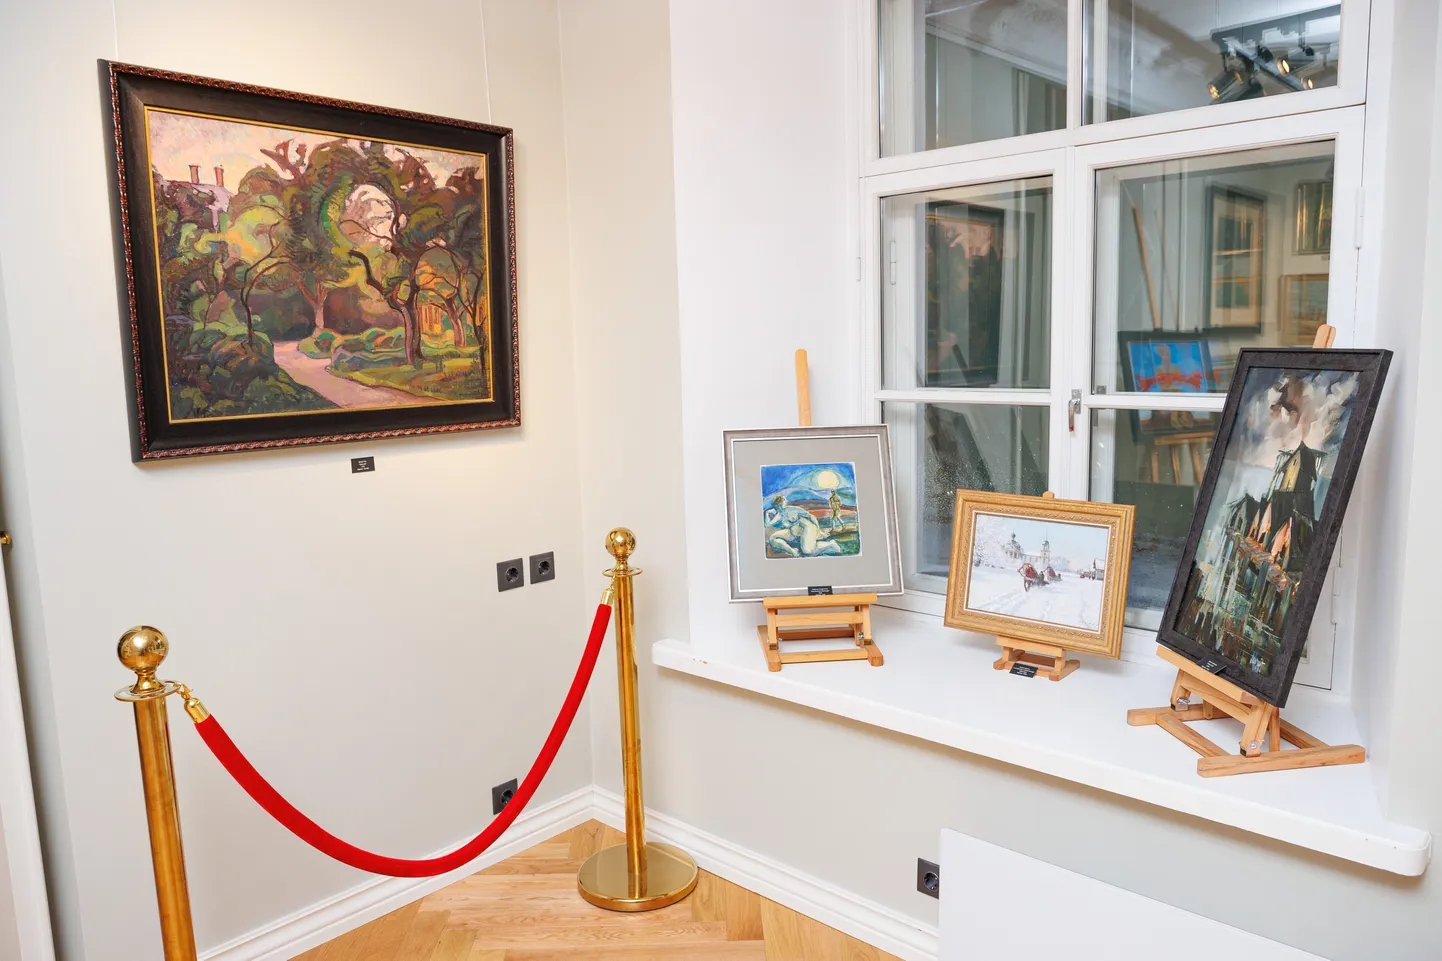 Картина Николая Трийка "Старый сад" (слева), проданная на осеннем аукционе эстонского искусства галереи Allee за 130 000 евро.